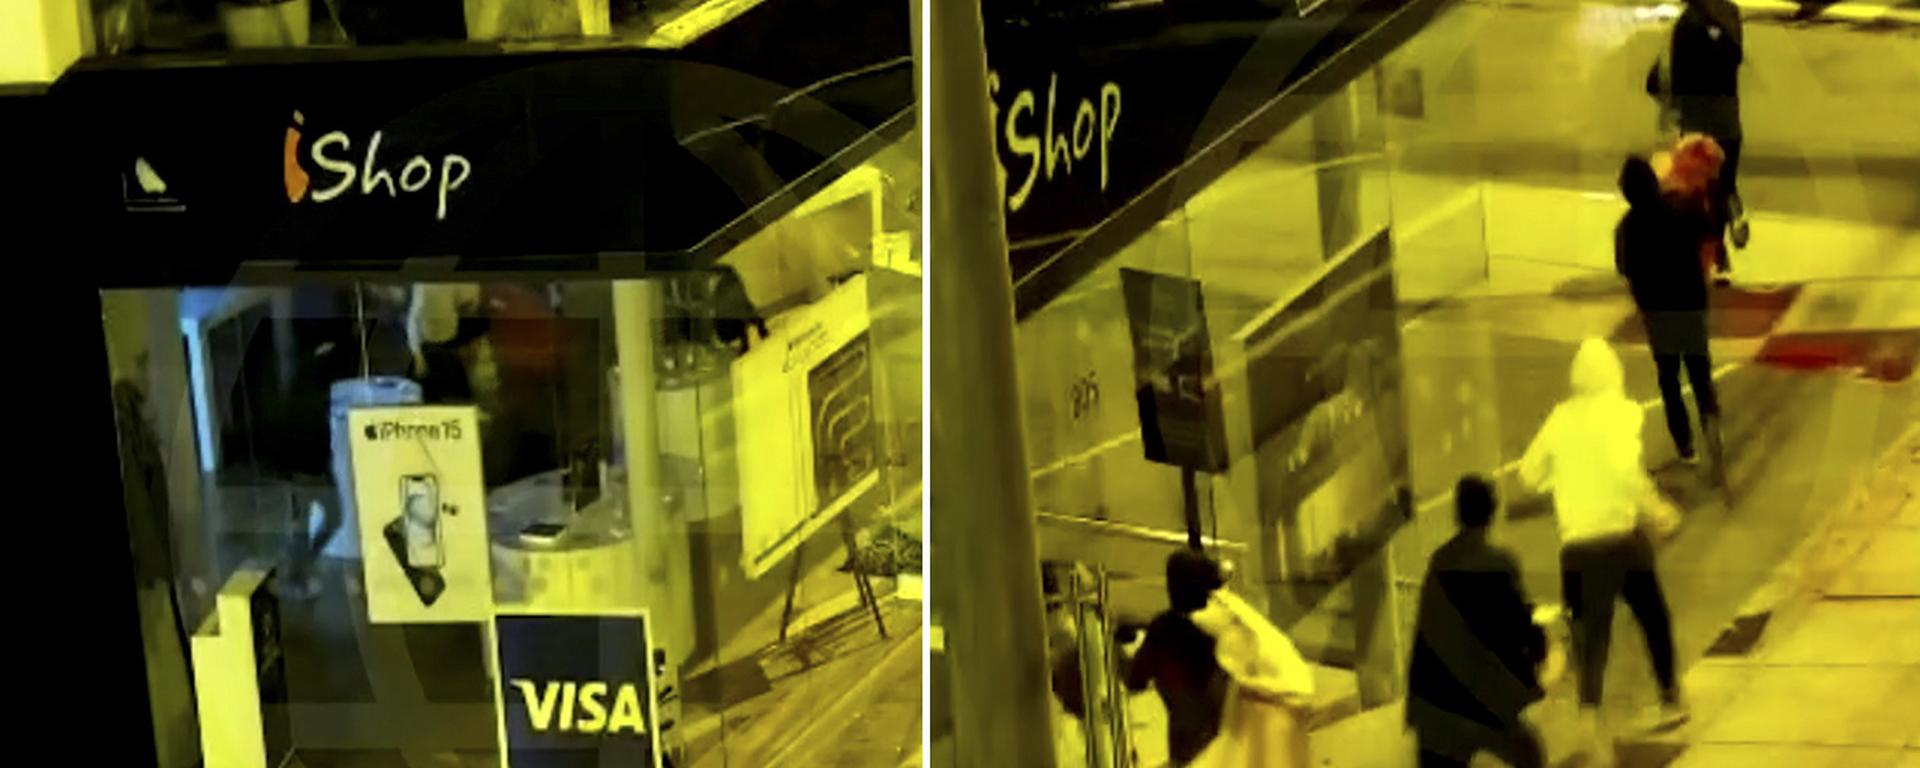 Violentos, rápidos y aparatosos: los robos en manada que se incrementan en zonas comerciales de Lima | VIDEOS